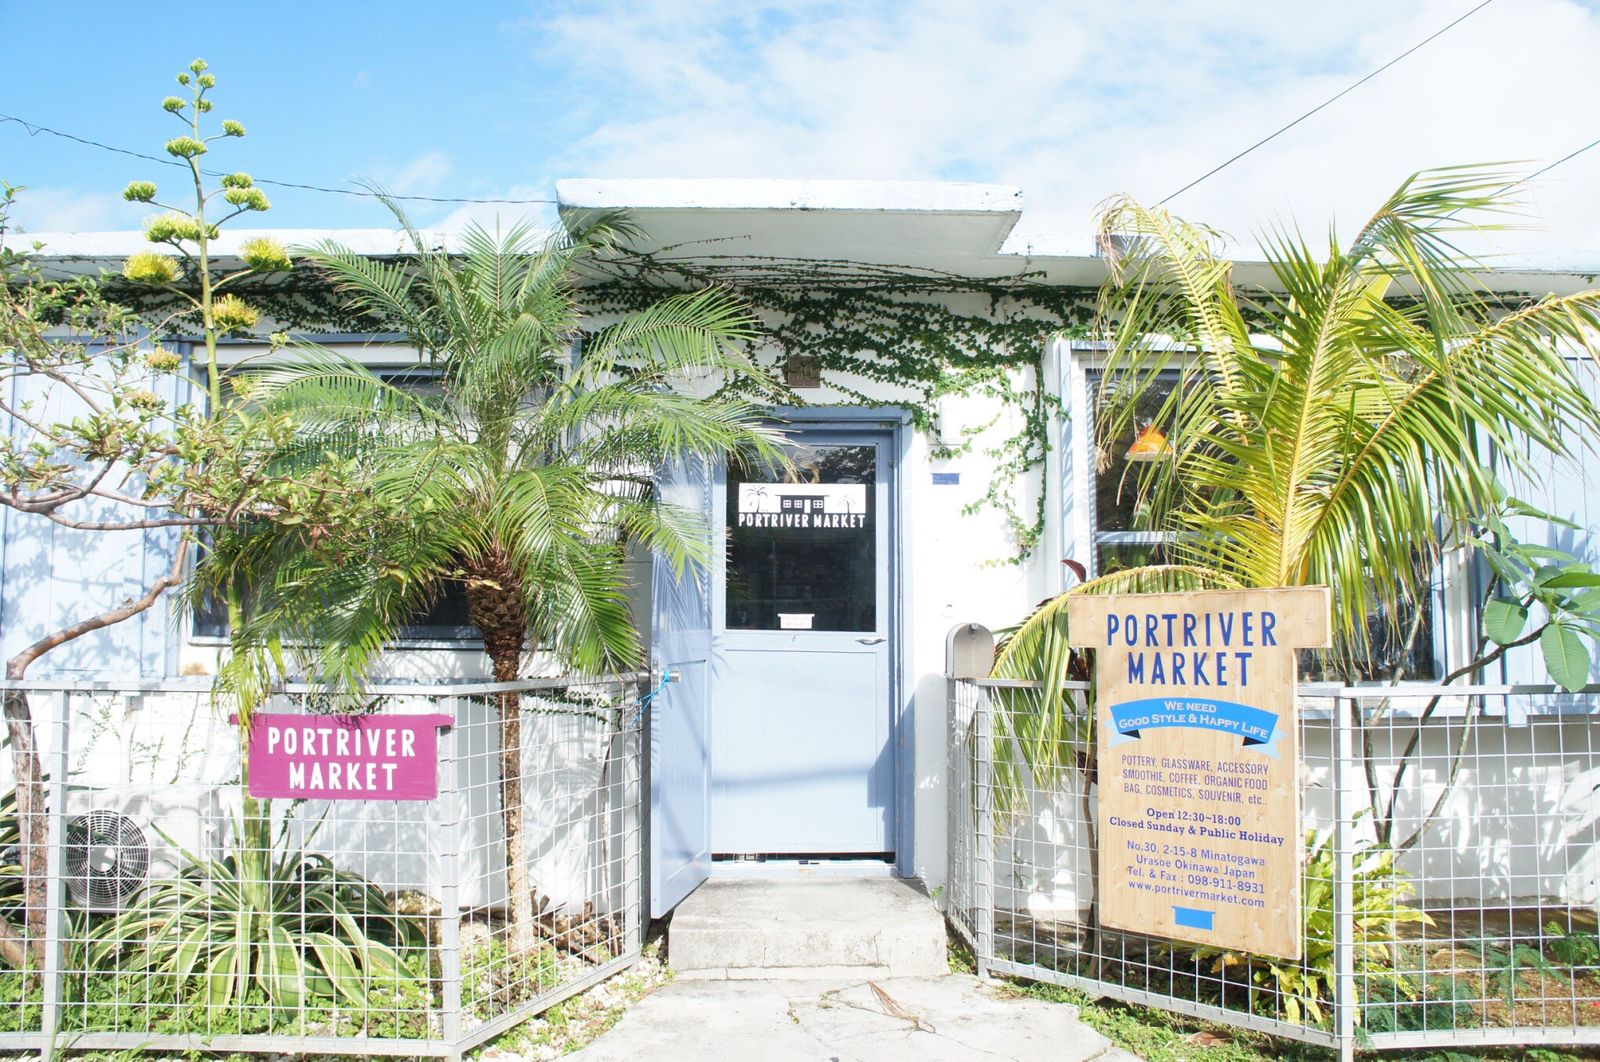 メイン画像 おしゃれすぎ 沖縄の外人住宅を利用したお店 Retrip リトリップ